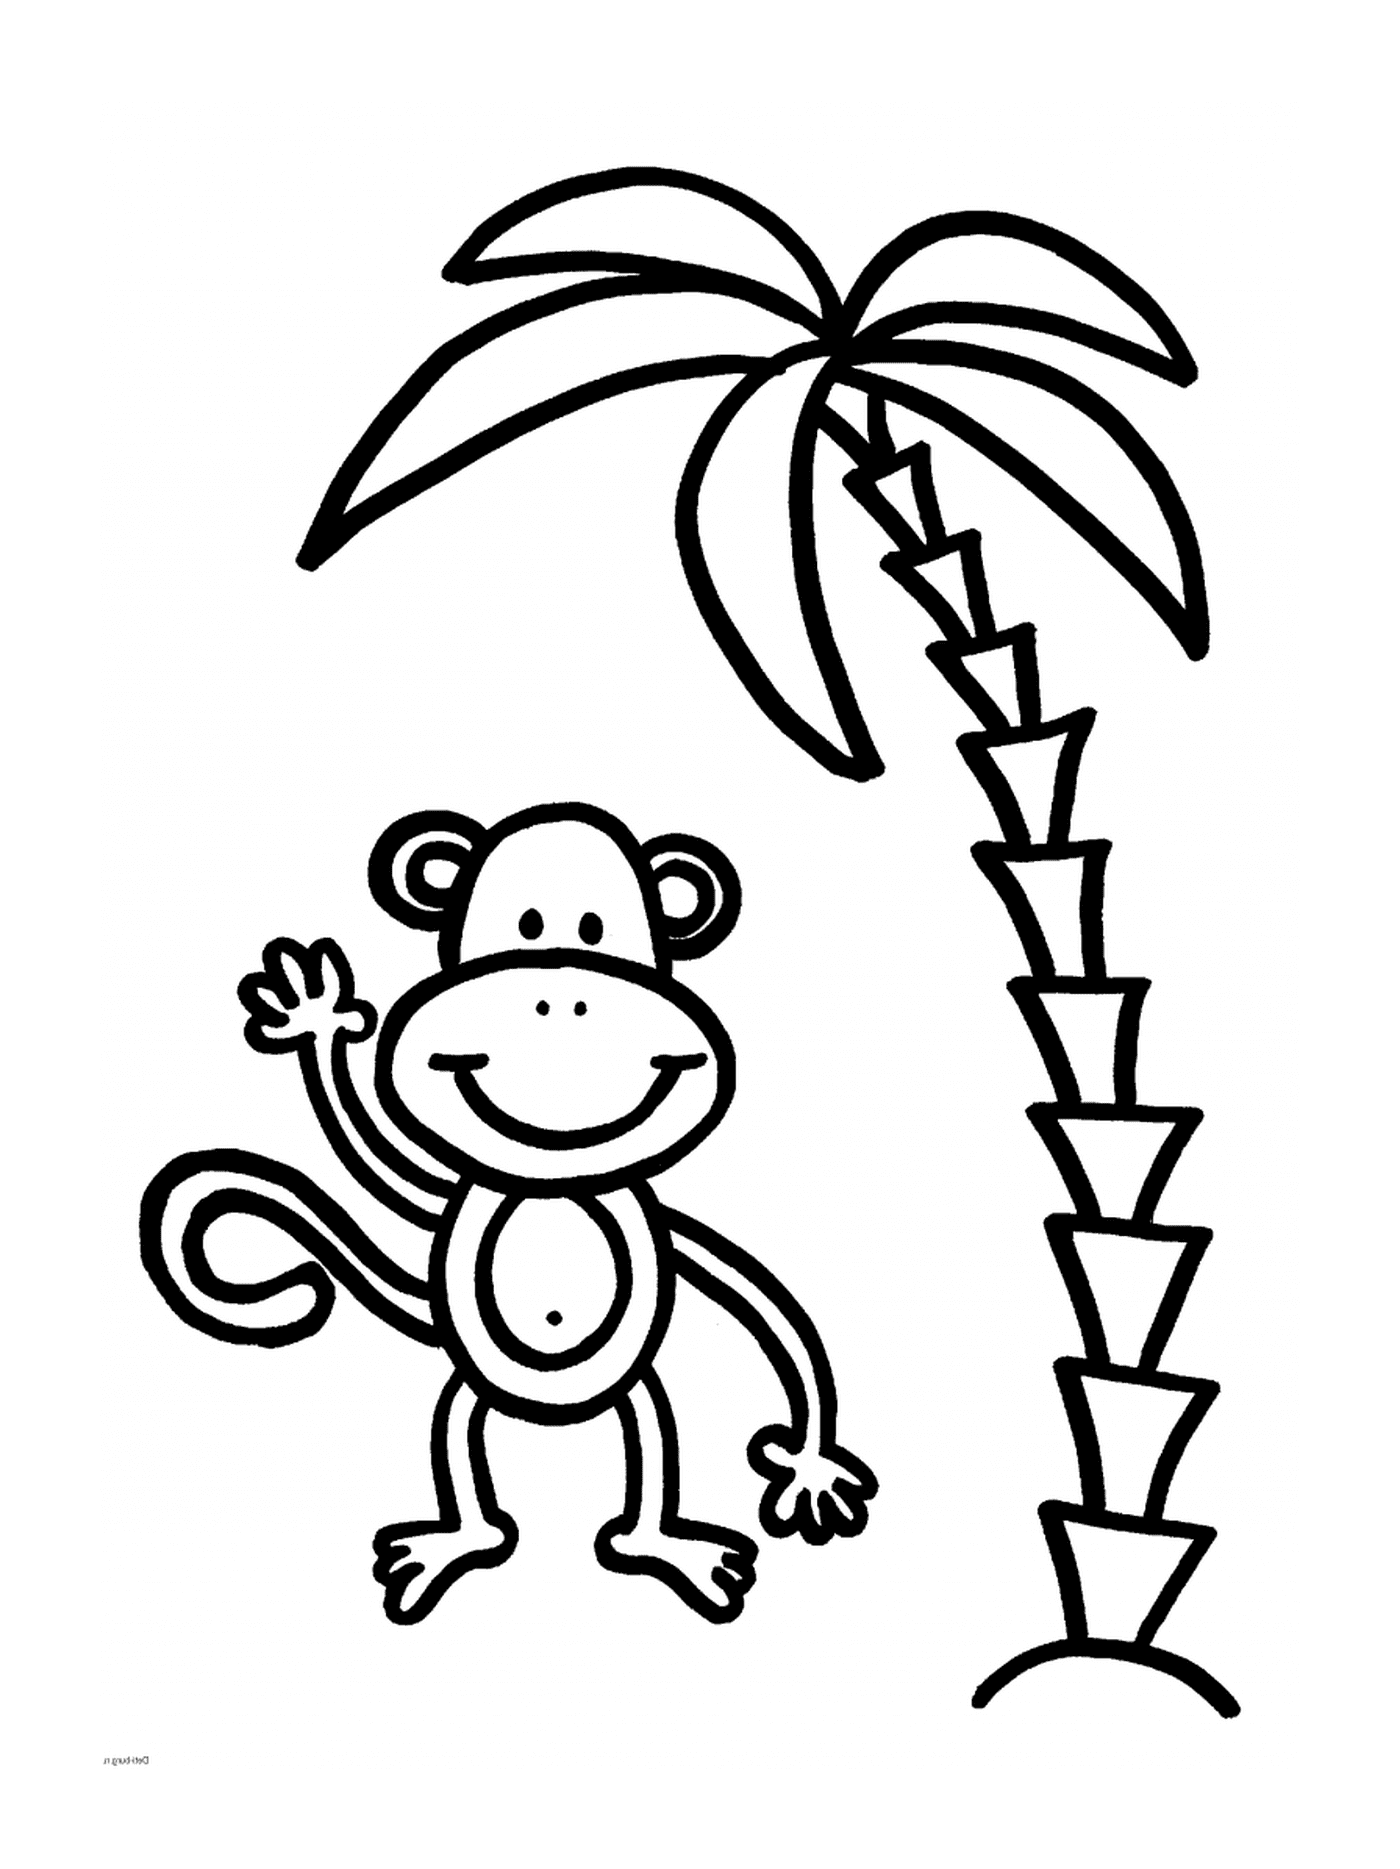  बंदर खिलाड़ी के साथ पाम ट्री 